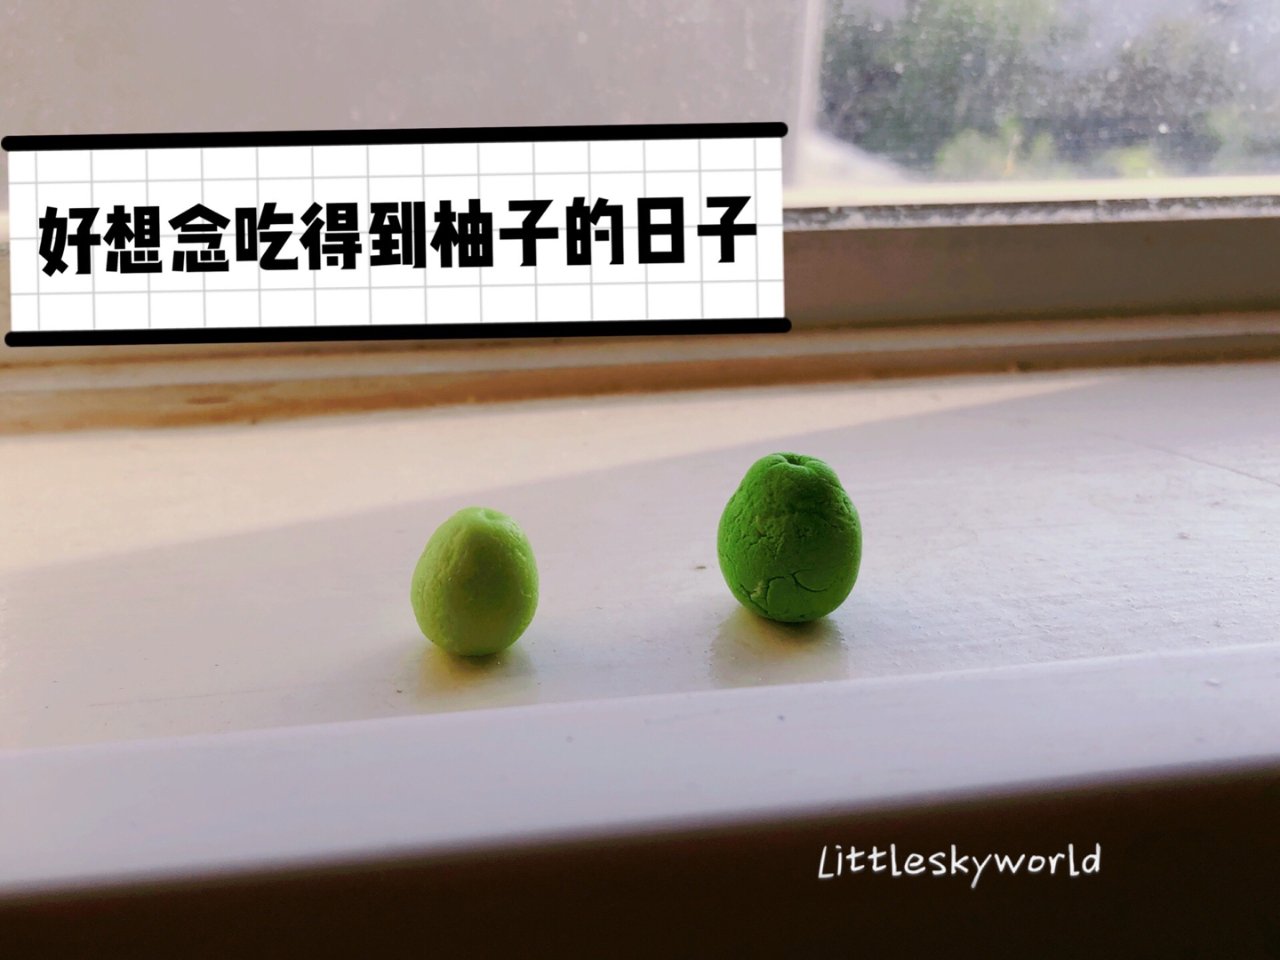 中秋佳节快乐！你也想吃柚子～了吗？...